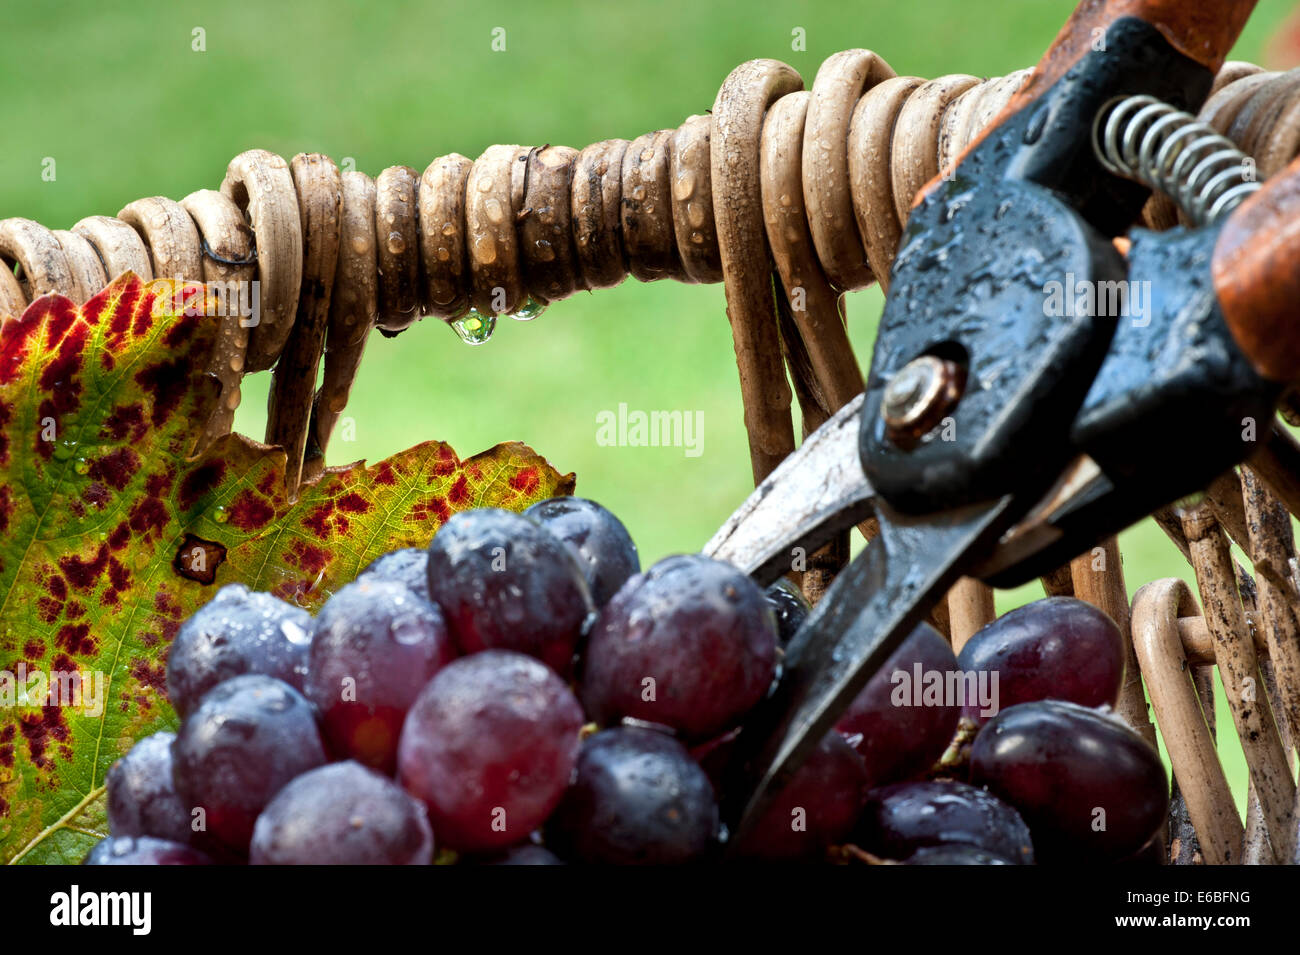 La récolte de vin dans le concept de pluie à raisins noirs en vin typique de pêcheurs professionnels panier avec des sécateurs dans des conditions de pluie Banque D'Images